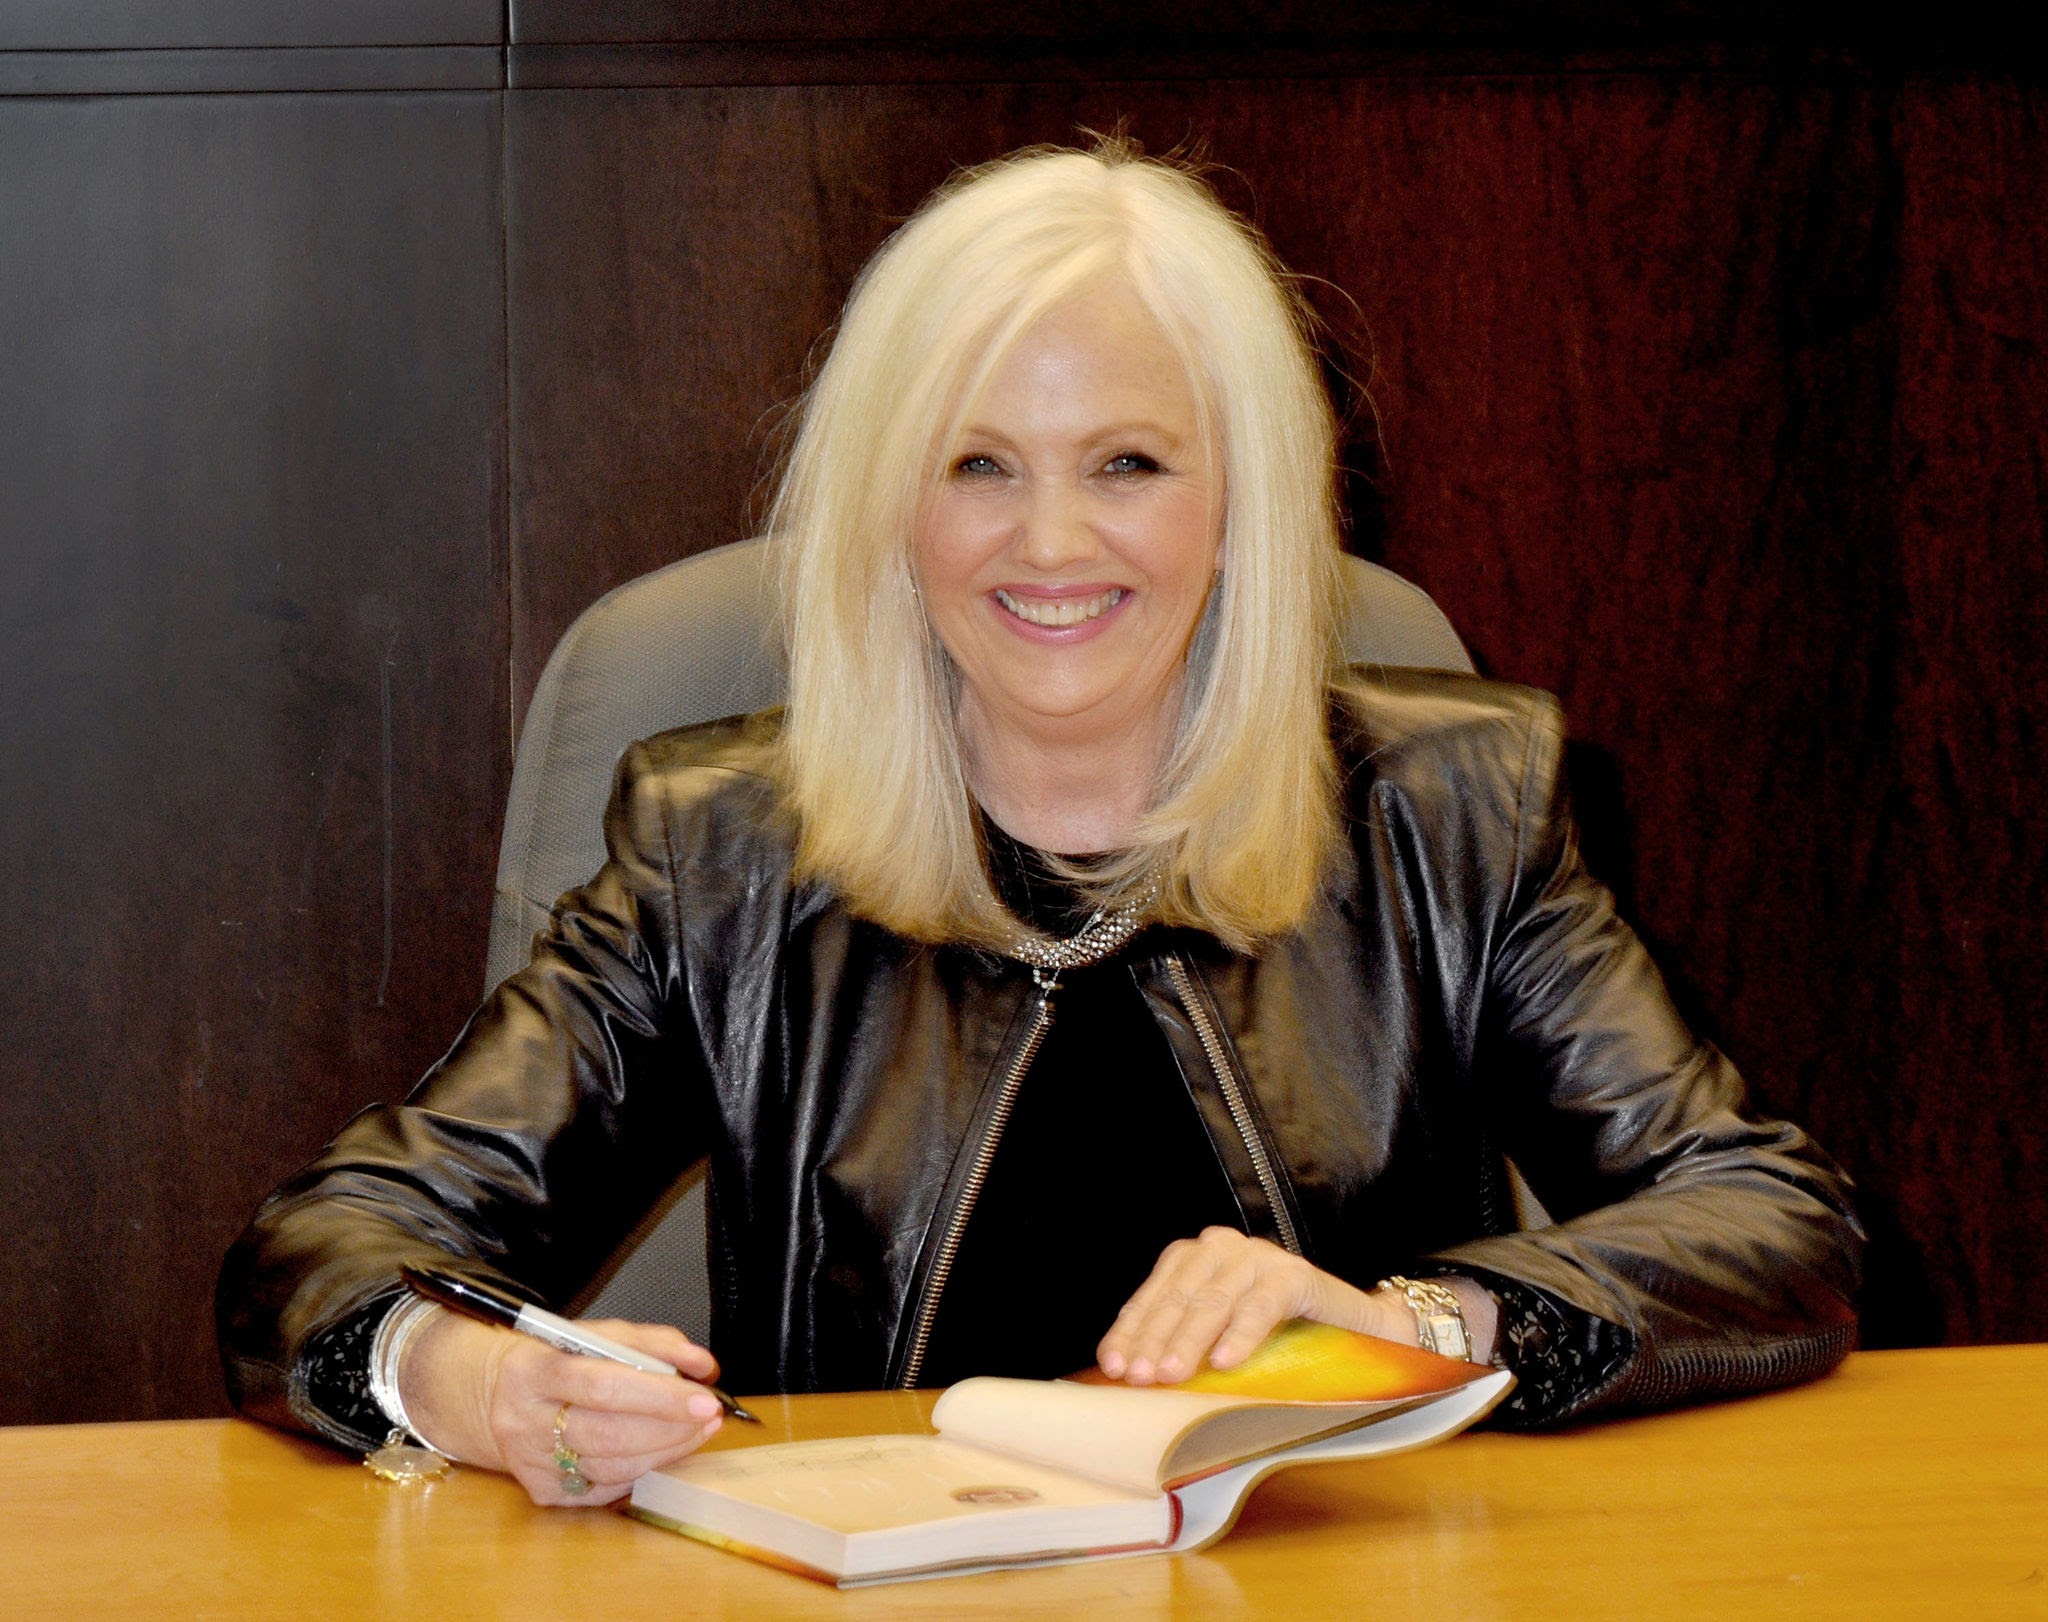 Rhonda Byrne Signs Copies Of Her New Book "Hero"